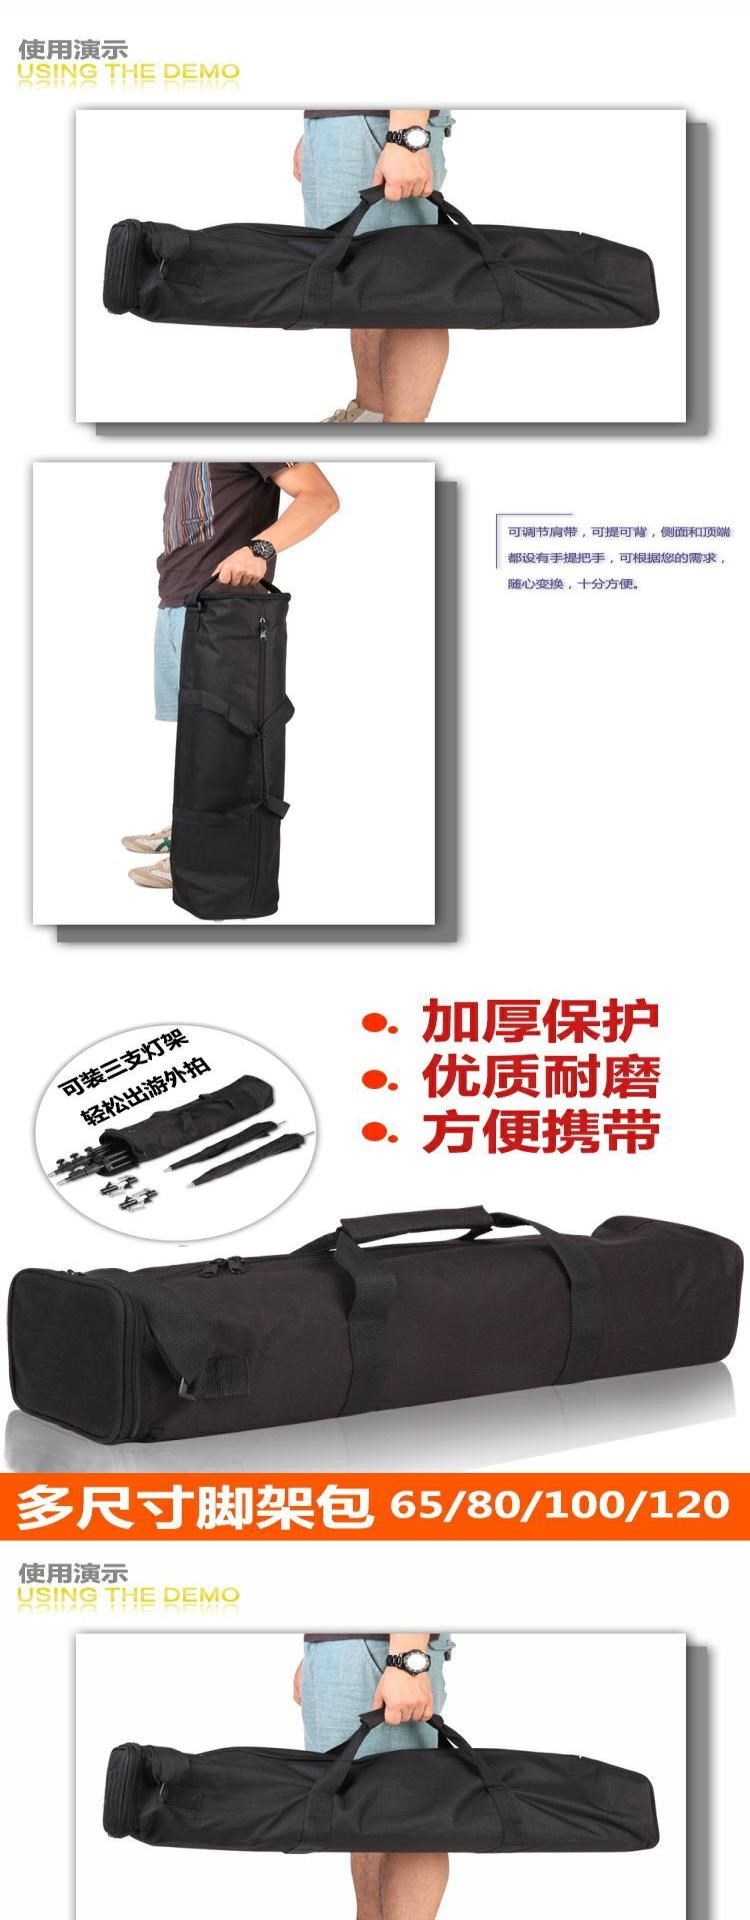 Tripod túi đứng túi xách tay ngoài trời túi tripod túi set phụ kiện thiết bị túi xách hộp ngoài trời - Phụ kiện máy ảnh DSLR / đơn